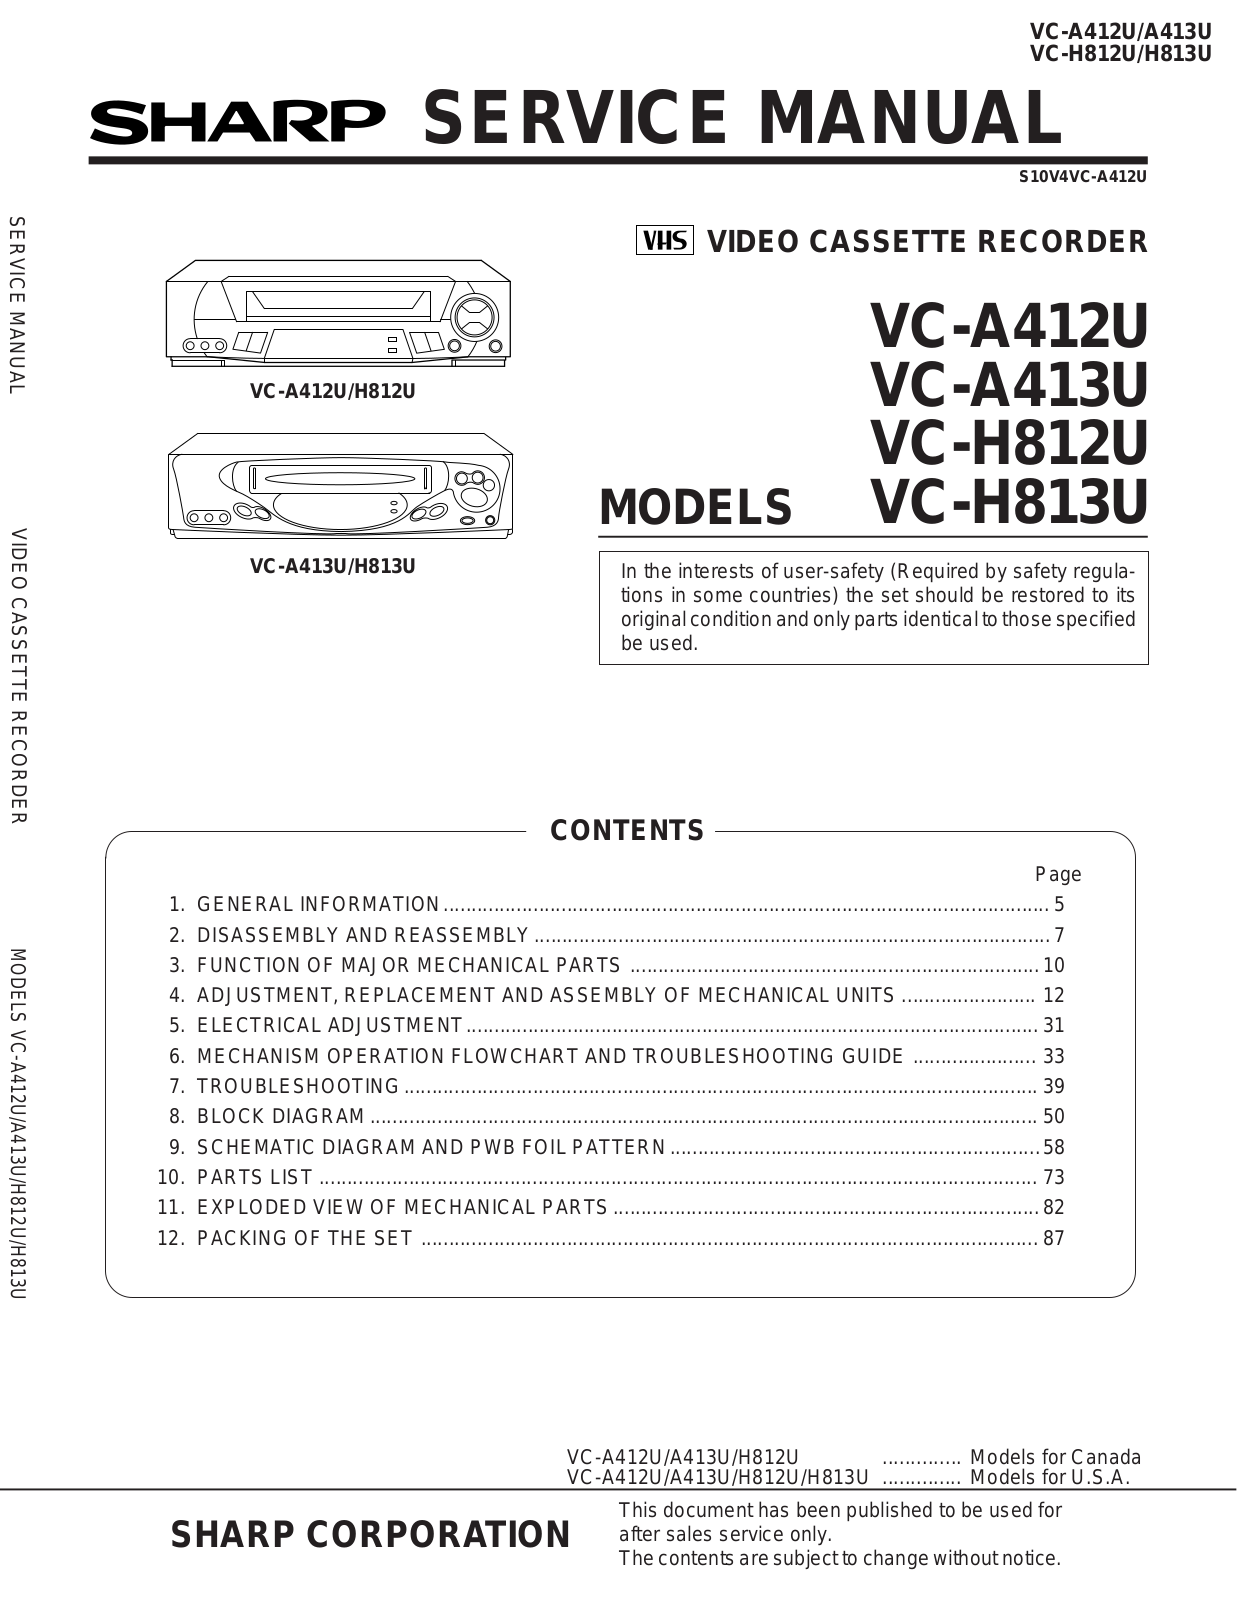 SHARP VCA412U, VC-A413U, VC-H812U, VC-H813U Service Manual